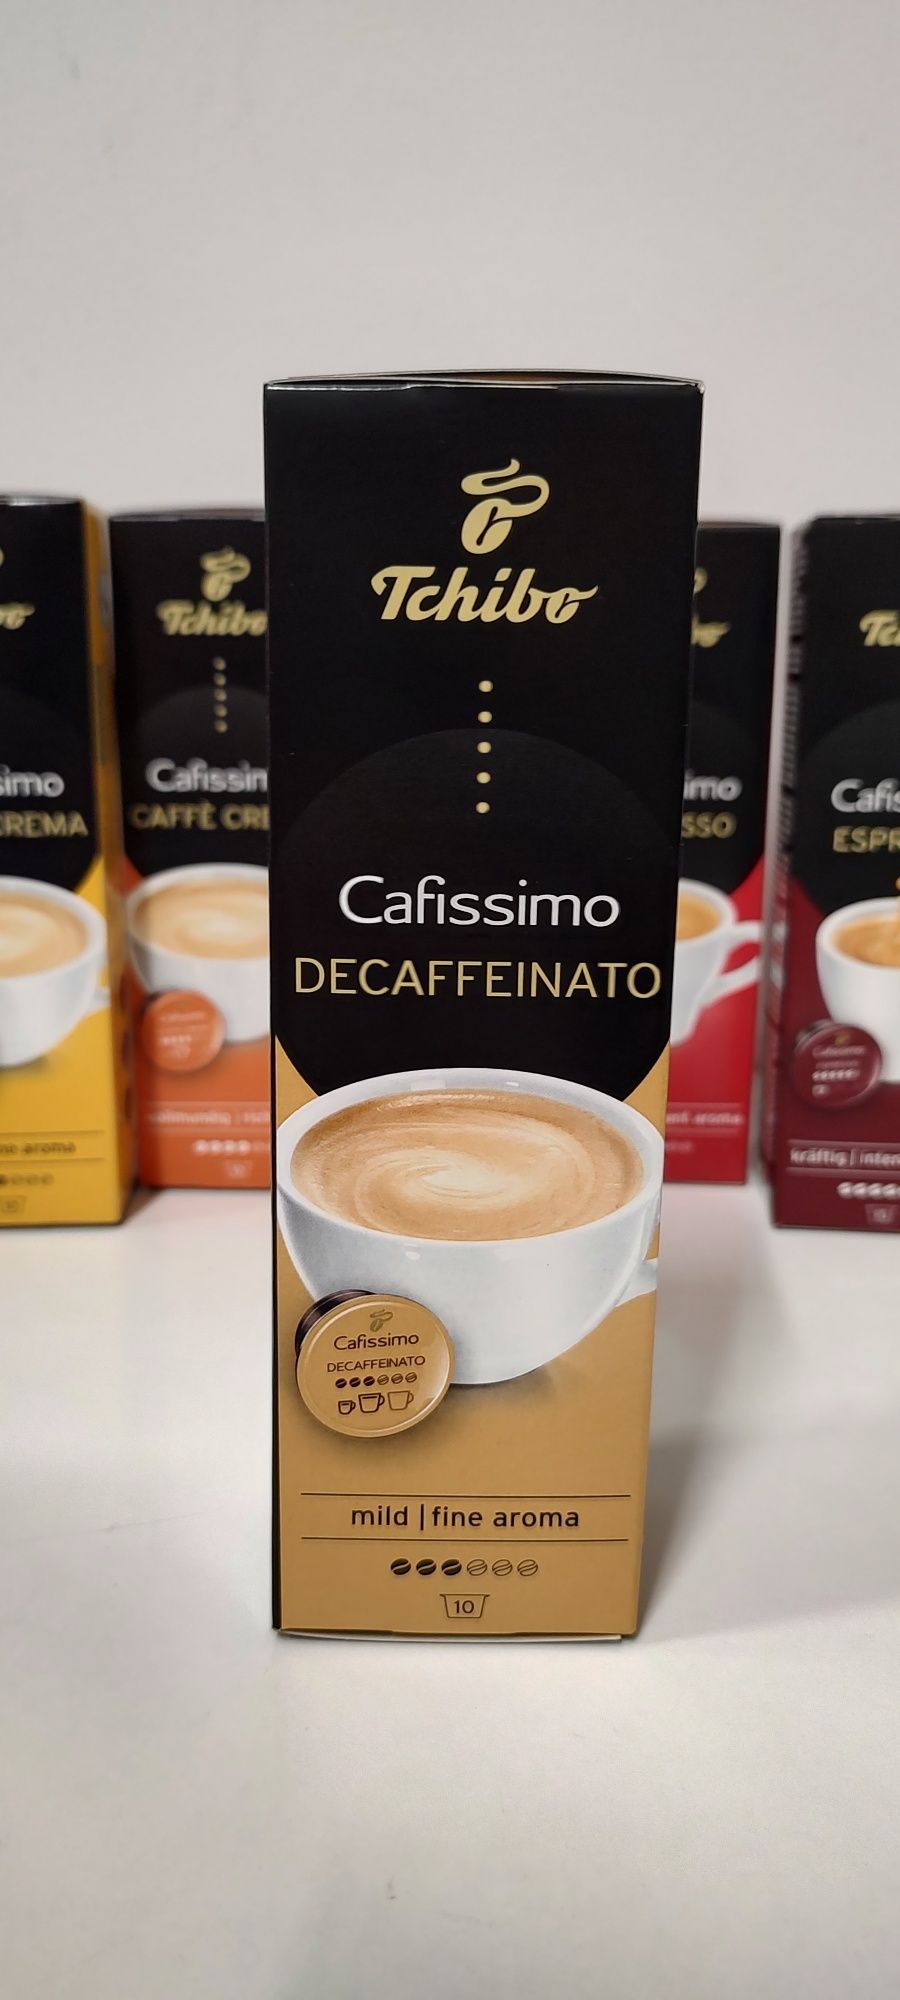 Капсули за кафе машина "Tchibo Cafissimo".